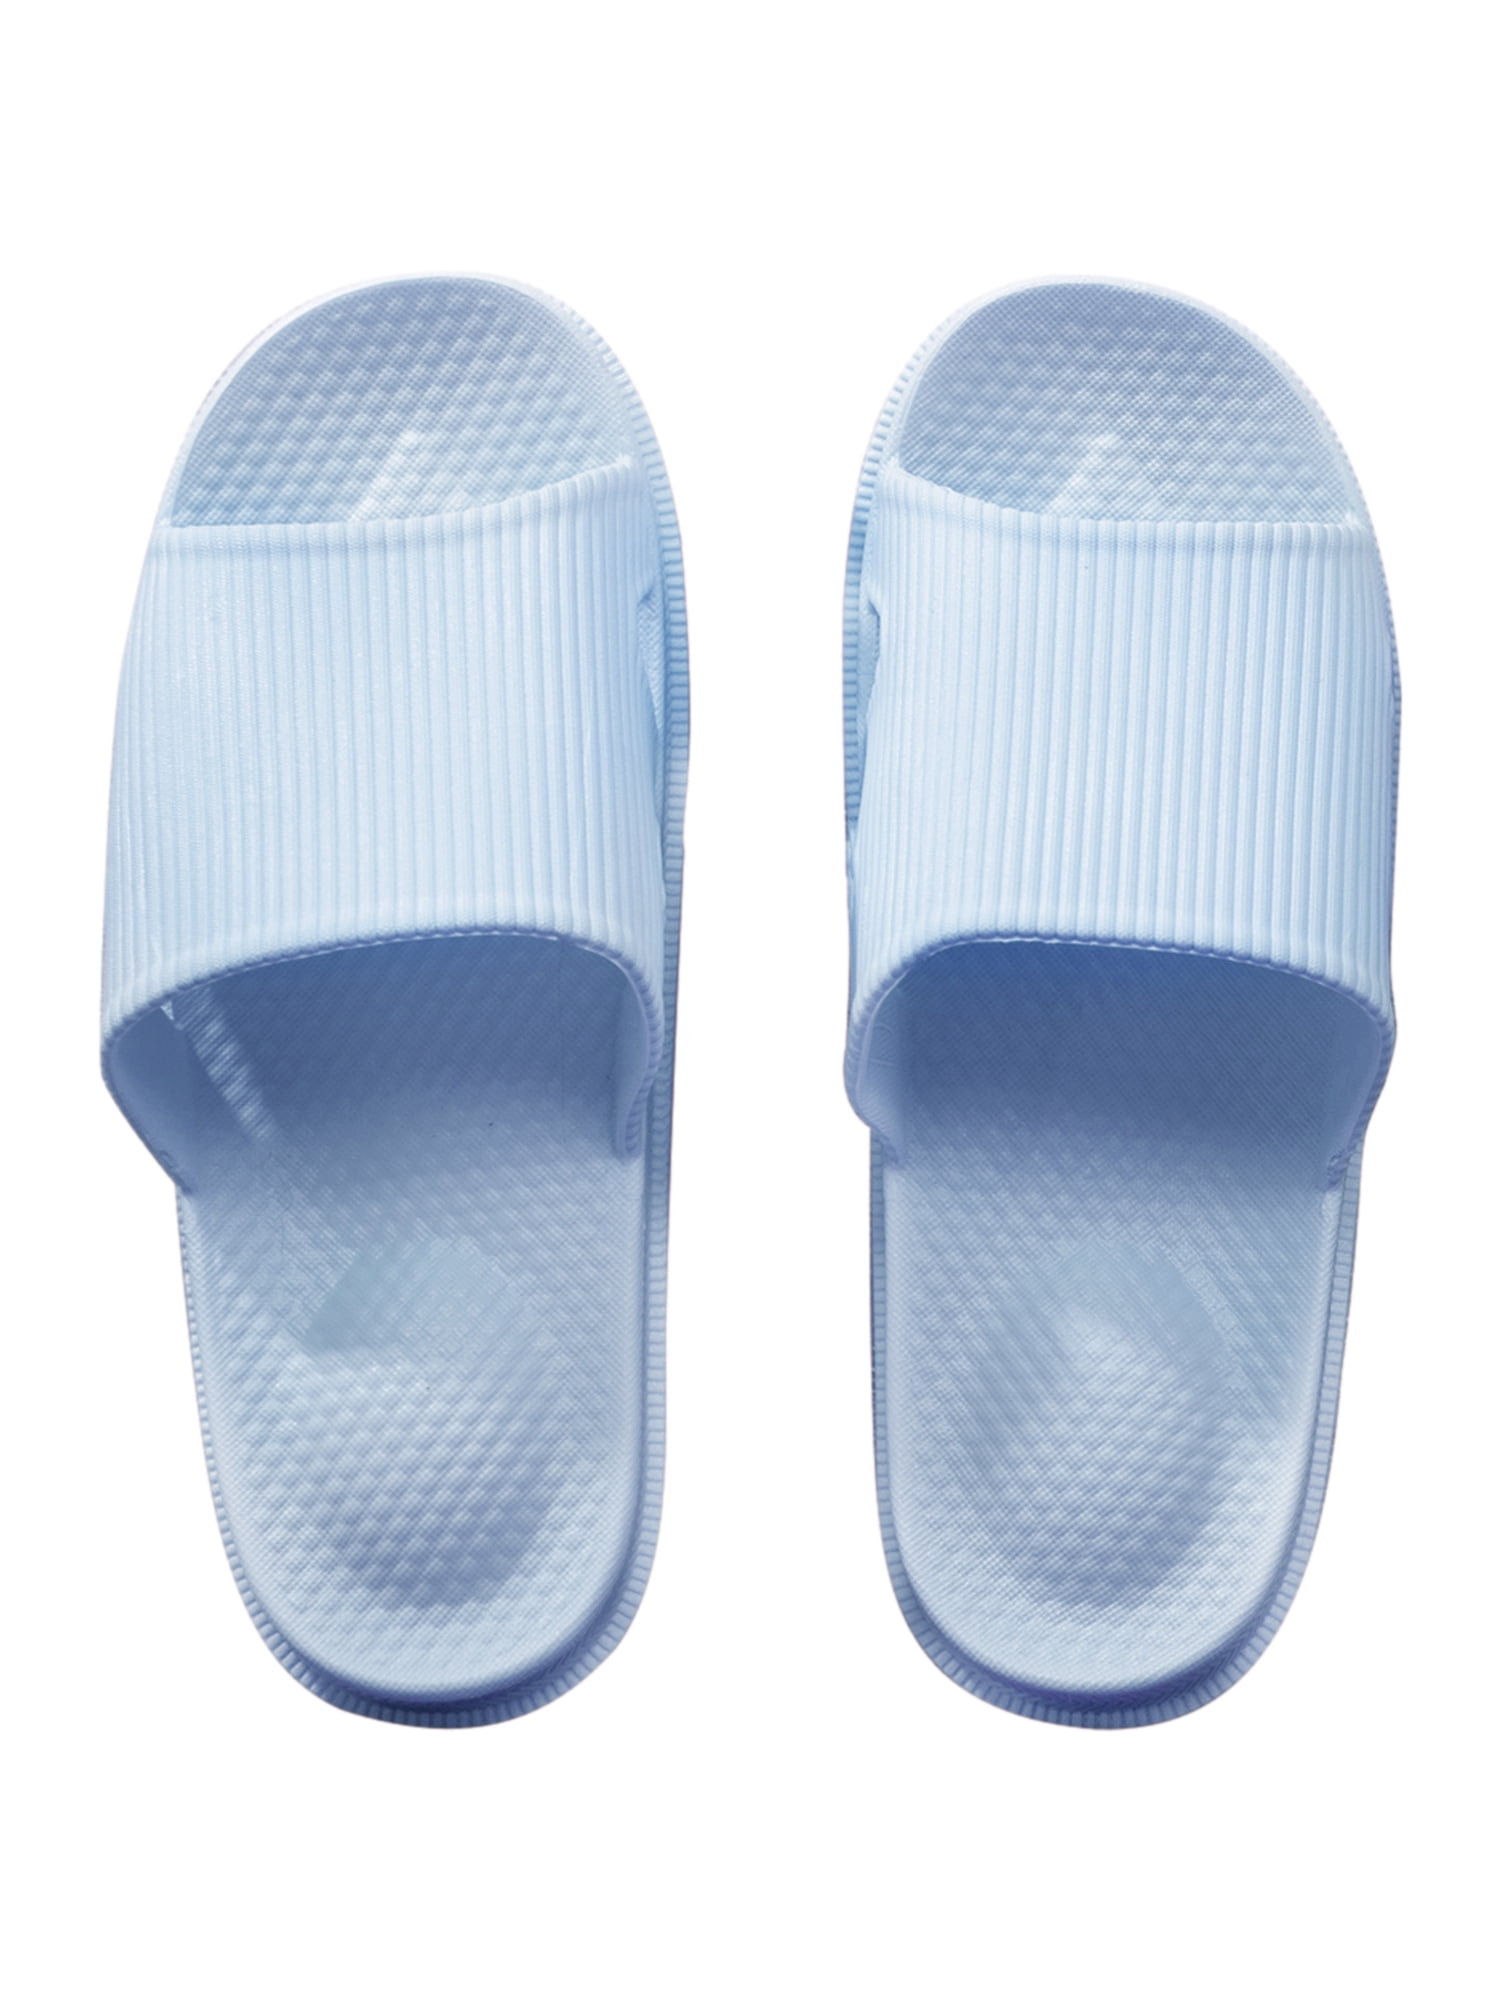 Unisex Non Slip Bathroom Slippers Shower Shoes Home Anti-Slip Sandals Slide  WEI 